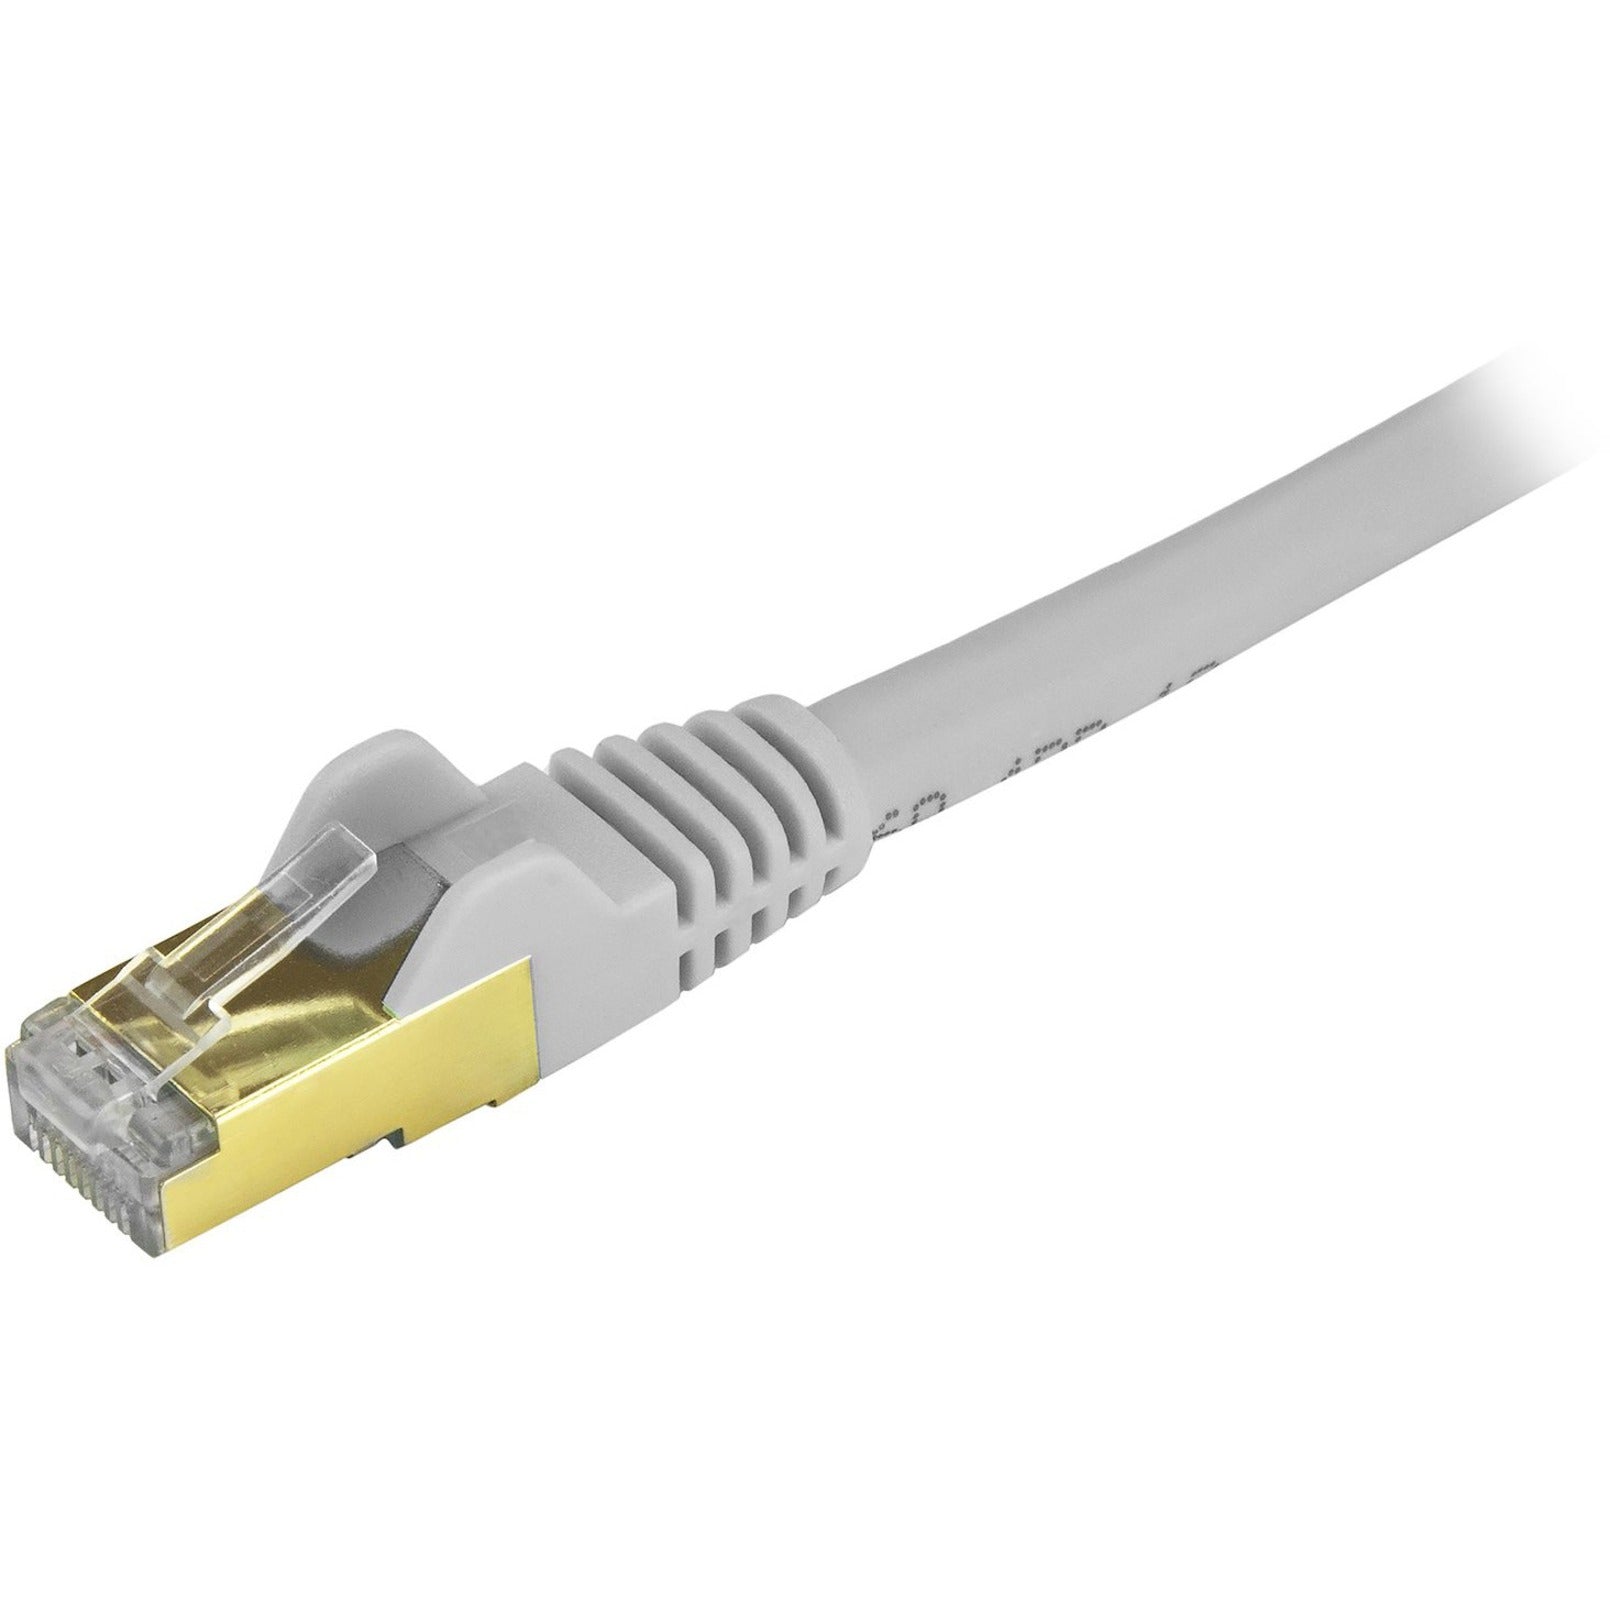 StarTech.com C6ASPAT2GR Cable de conexión Ethernet Cat6a - Blindado (STP) - 2 pies Gris Cable Ethernet RJ45 sin enganches